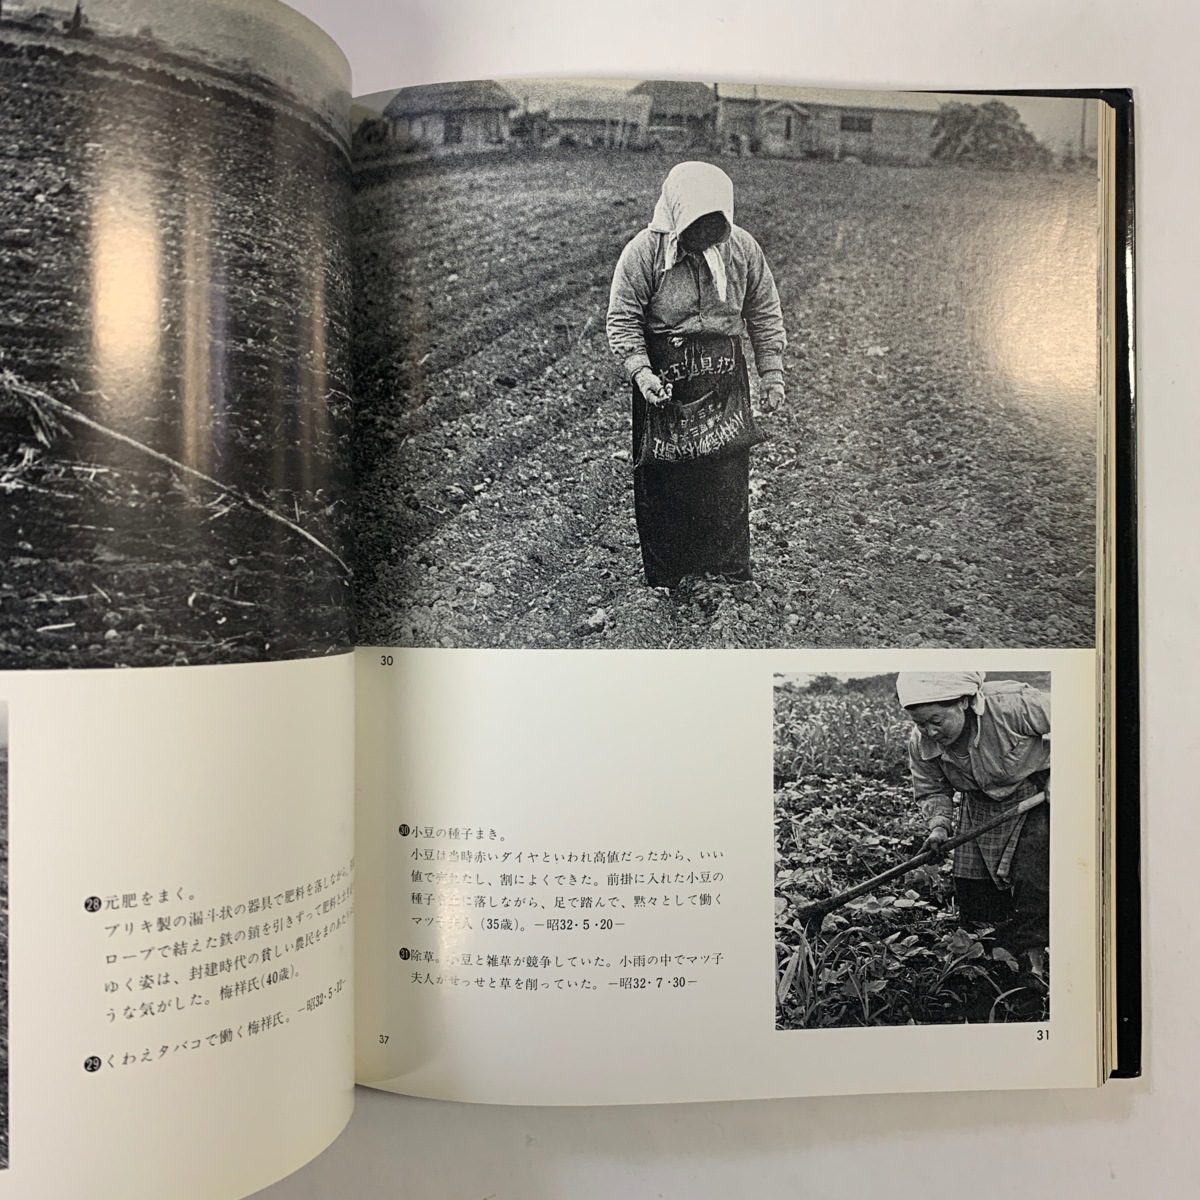 掛川源一郎写真集 大地に生きる 北海道の沖縄村 昭和55年 第一法規出版